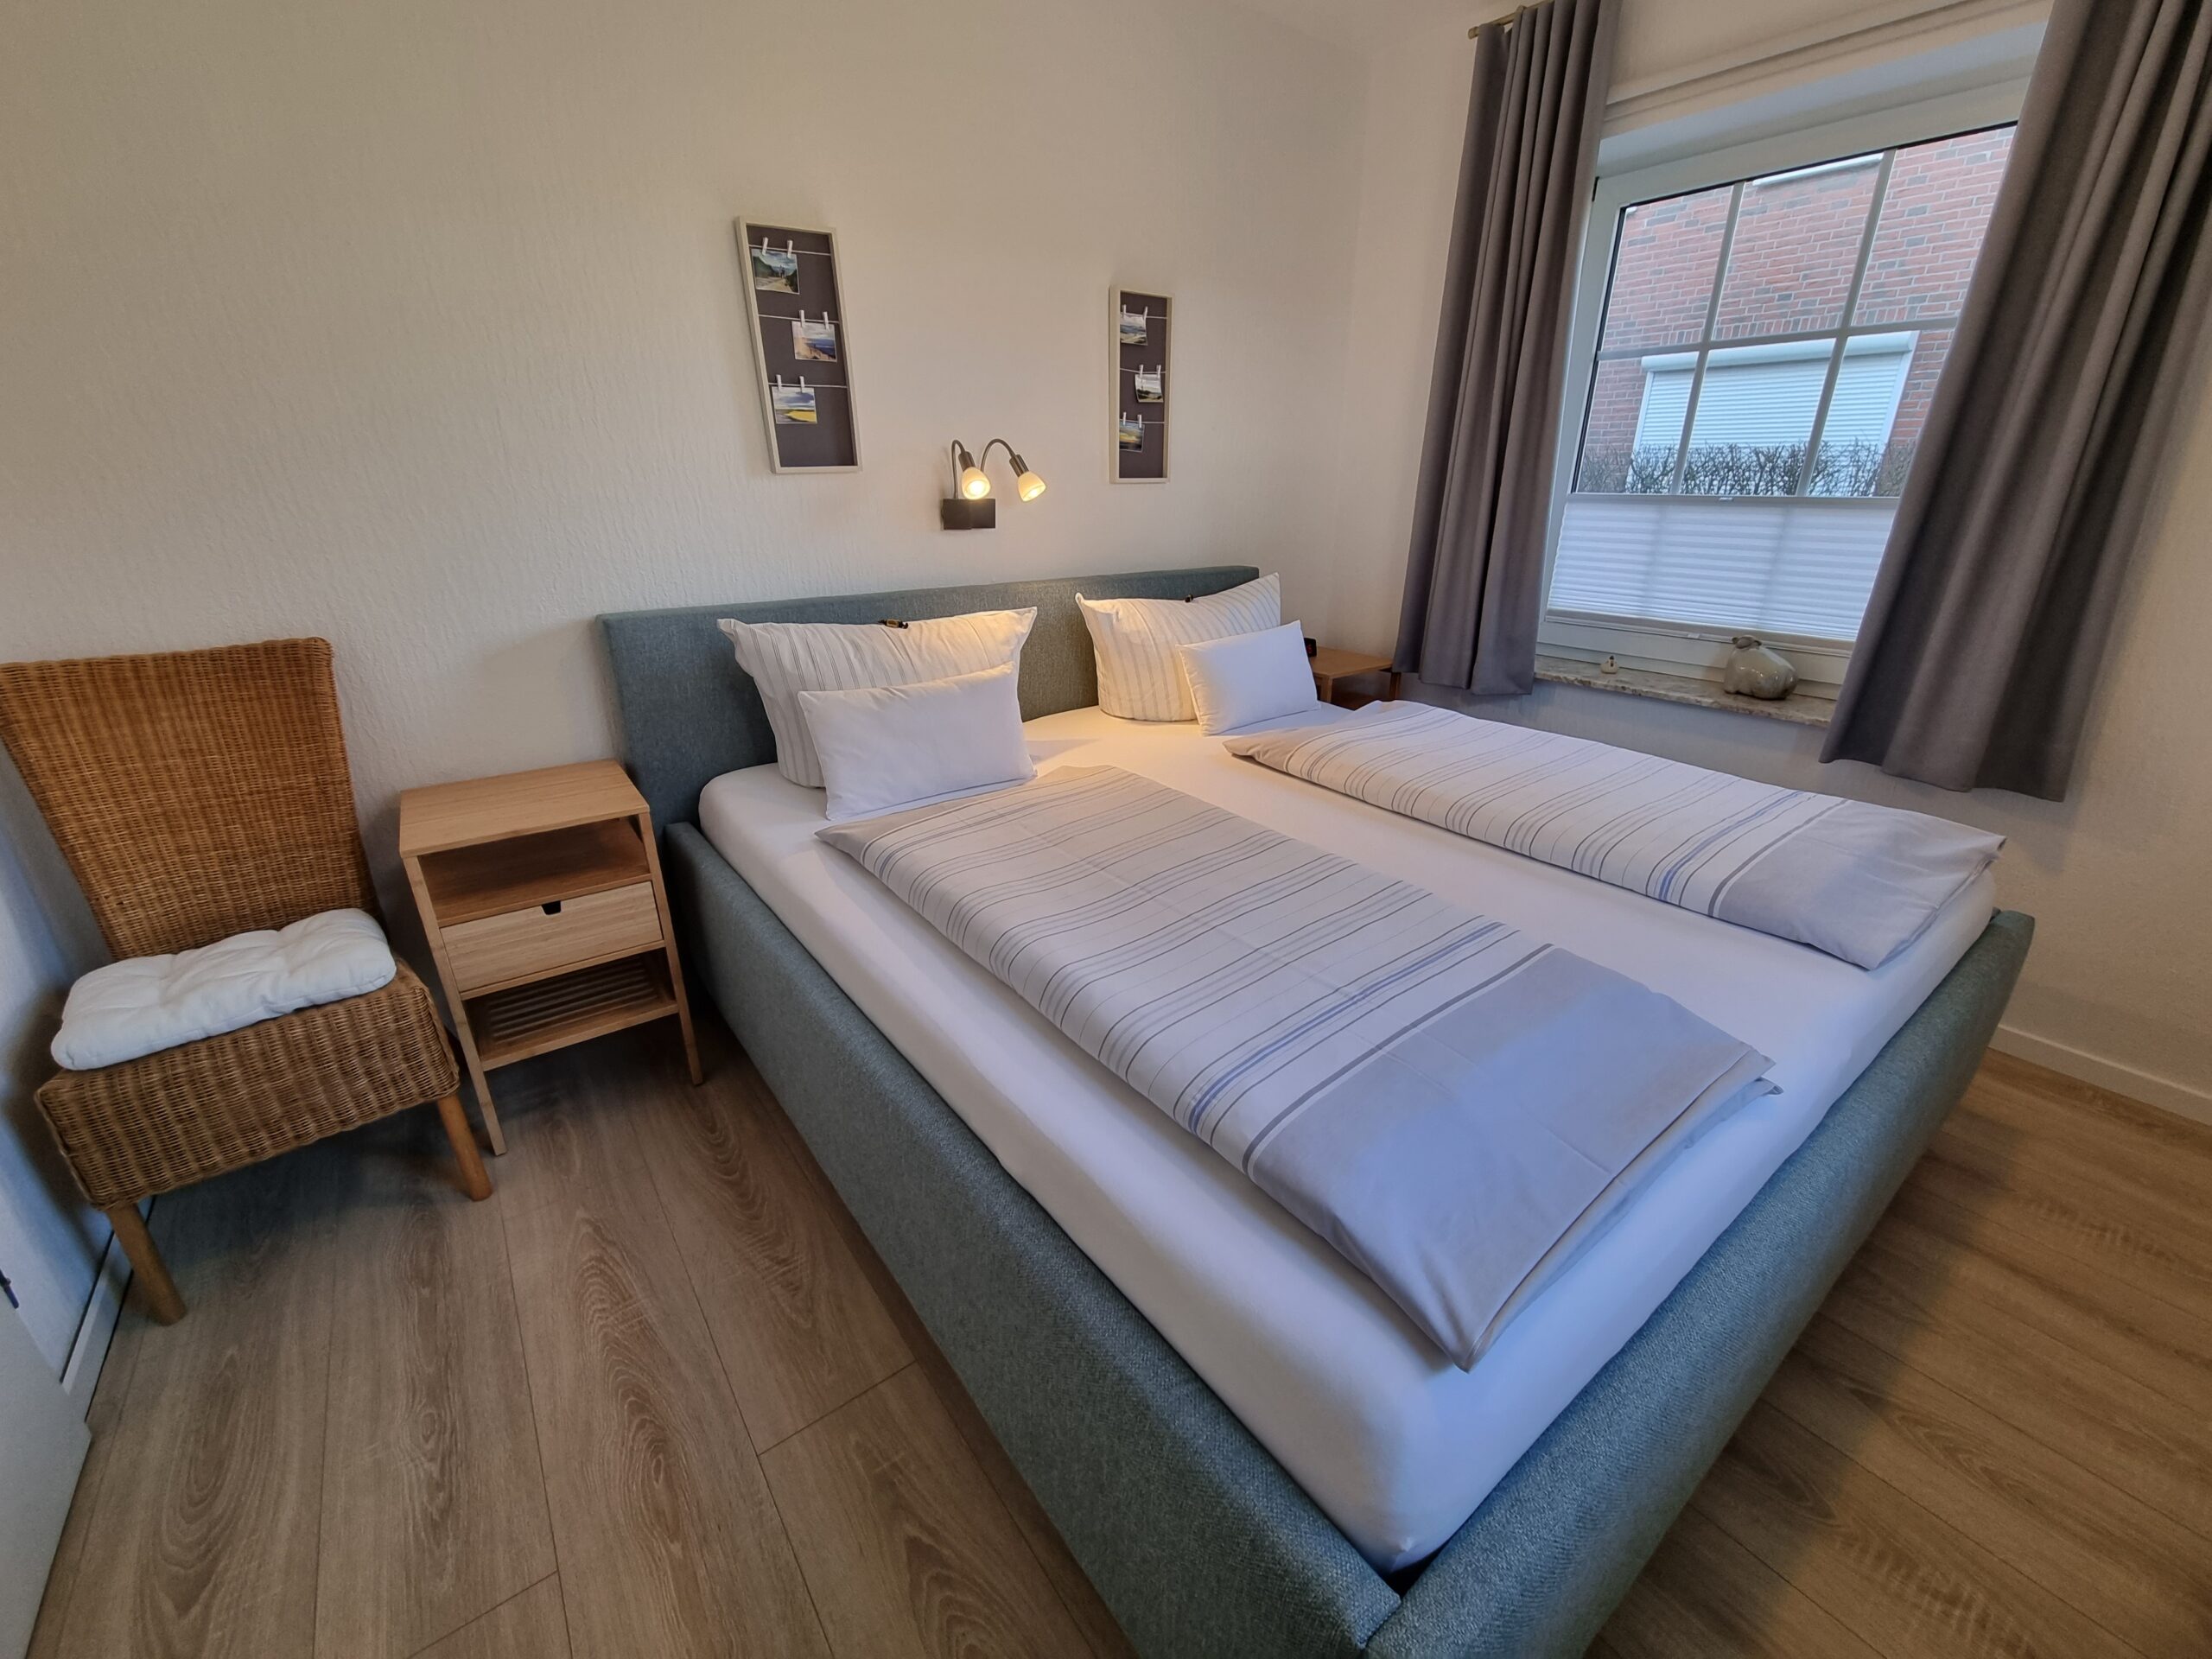 Doppelbettzimmer mit Sicht auf ein Fenster in einer Hotelsuite im Hotel Friesenhuus